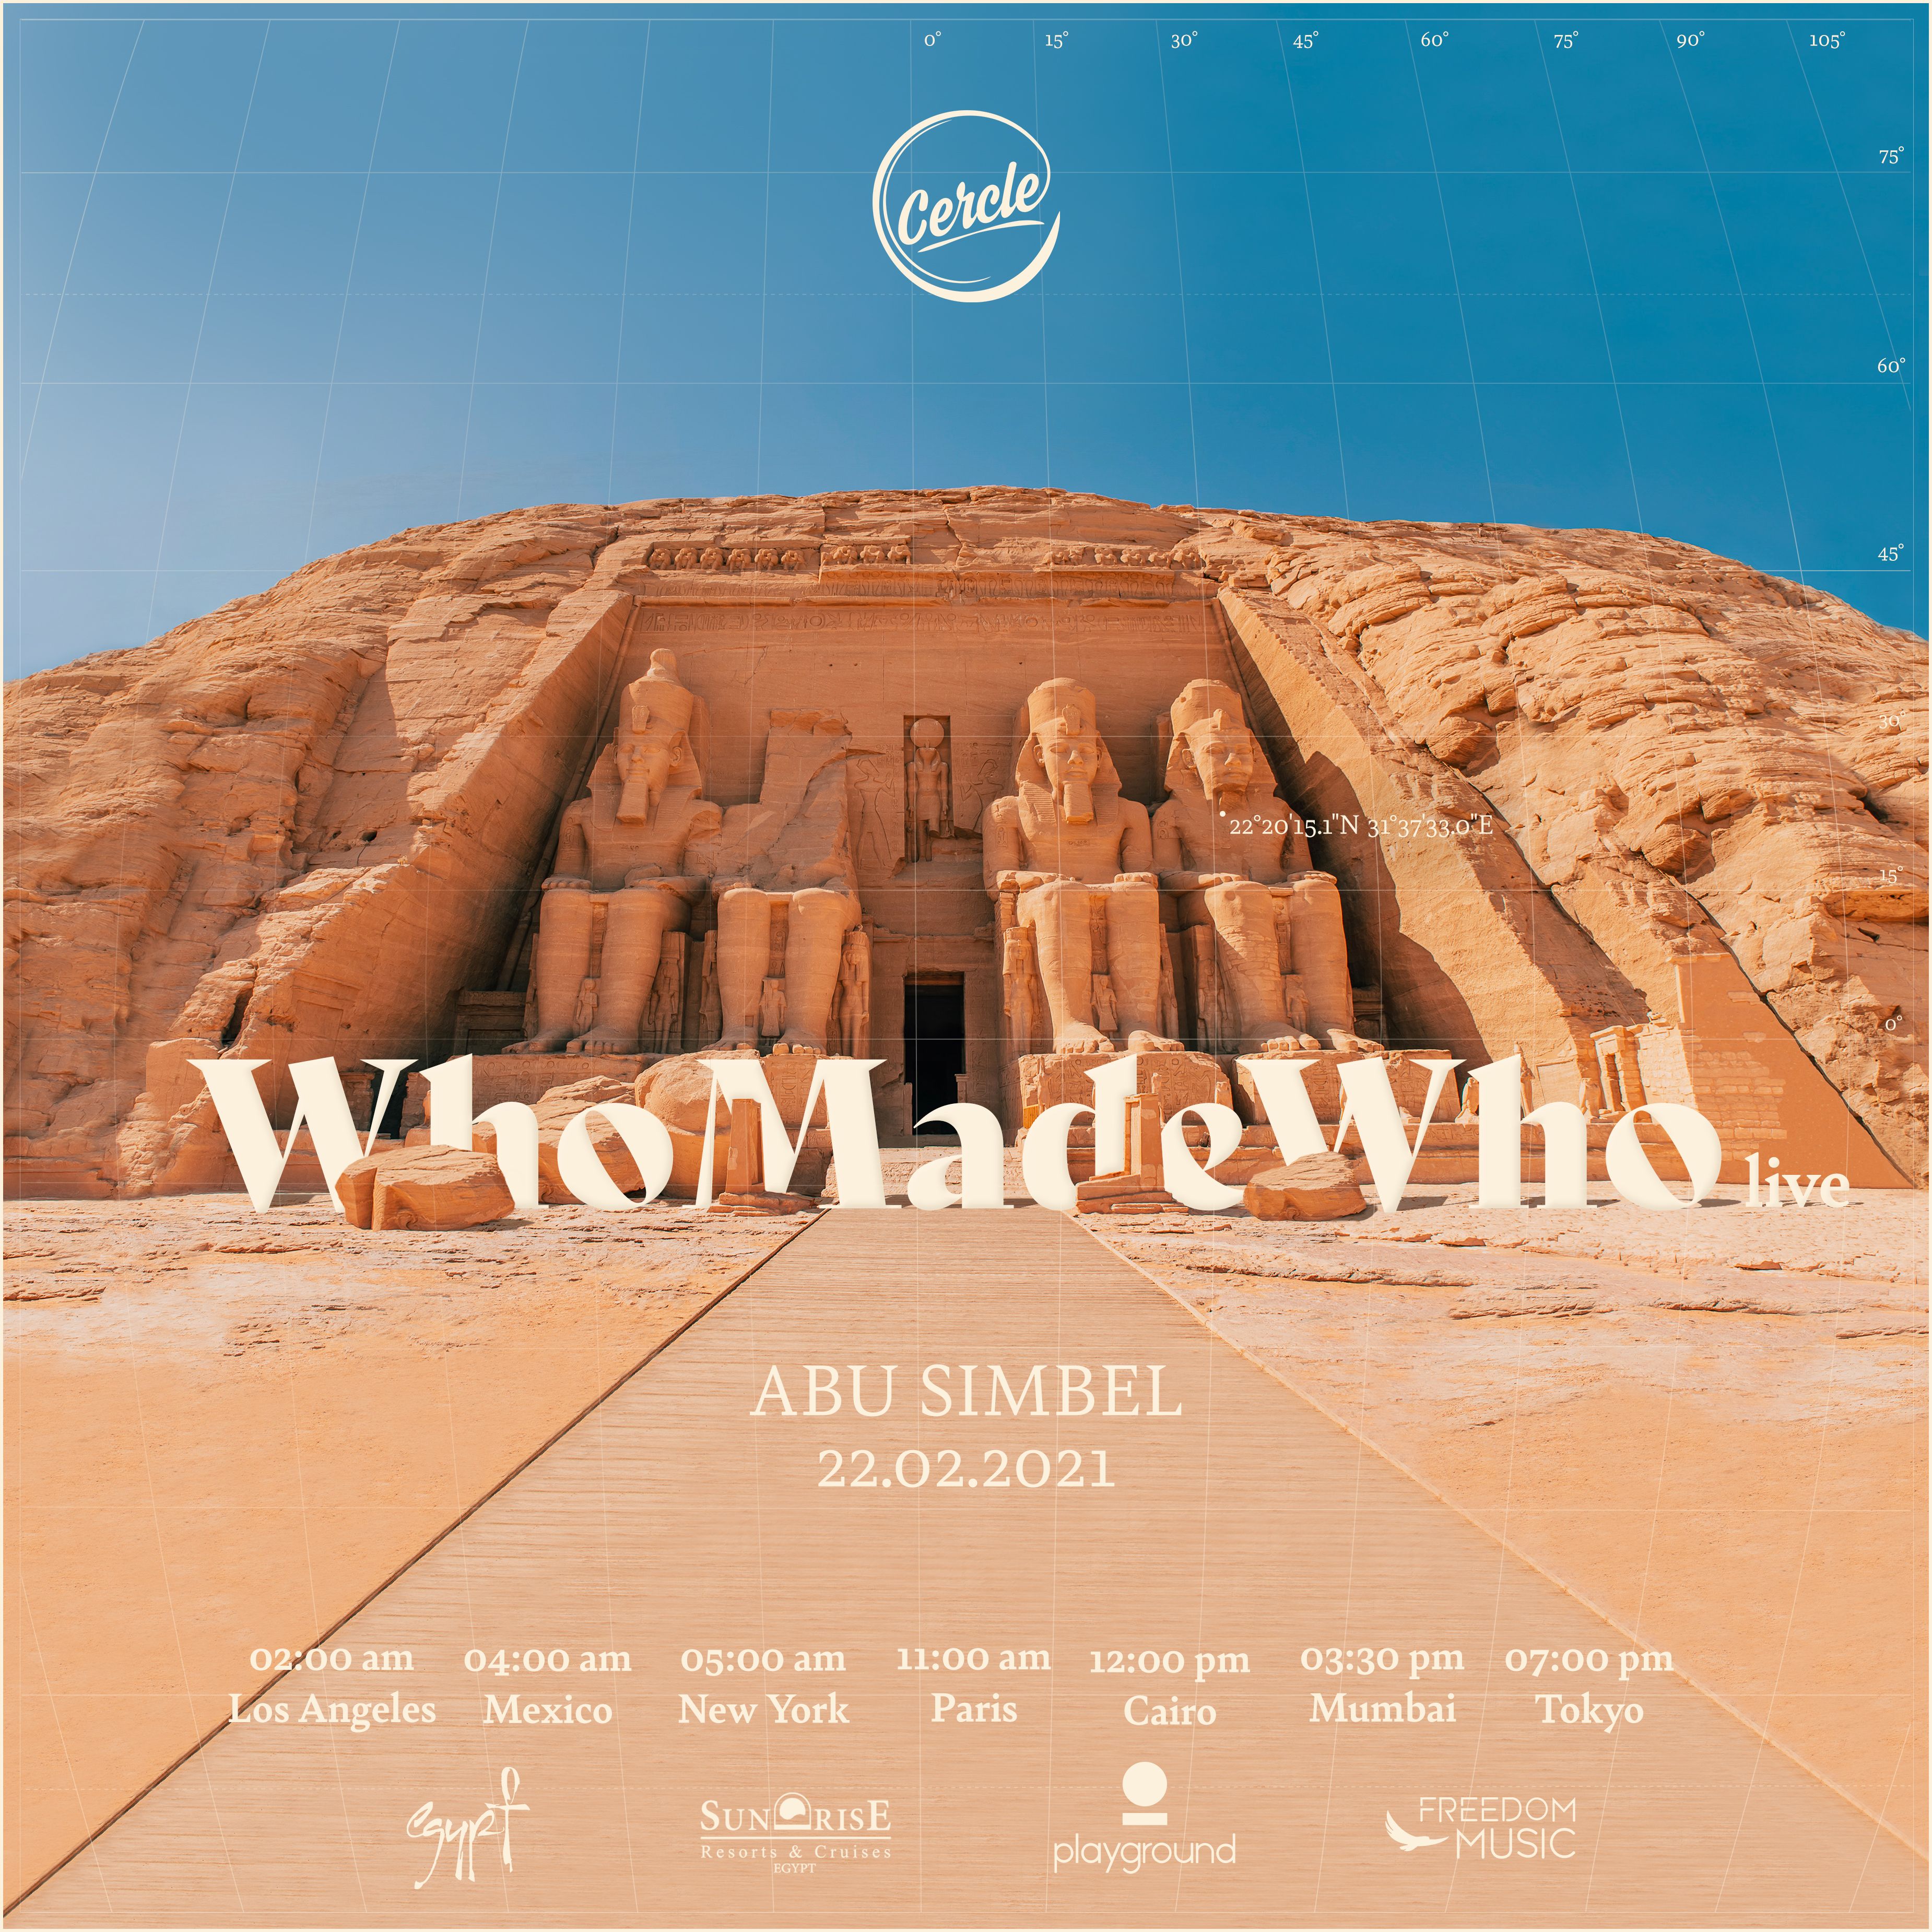 ດາວໂຫລດ WhoMadeWho live at Abu Simbel, Egypt for Cercle